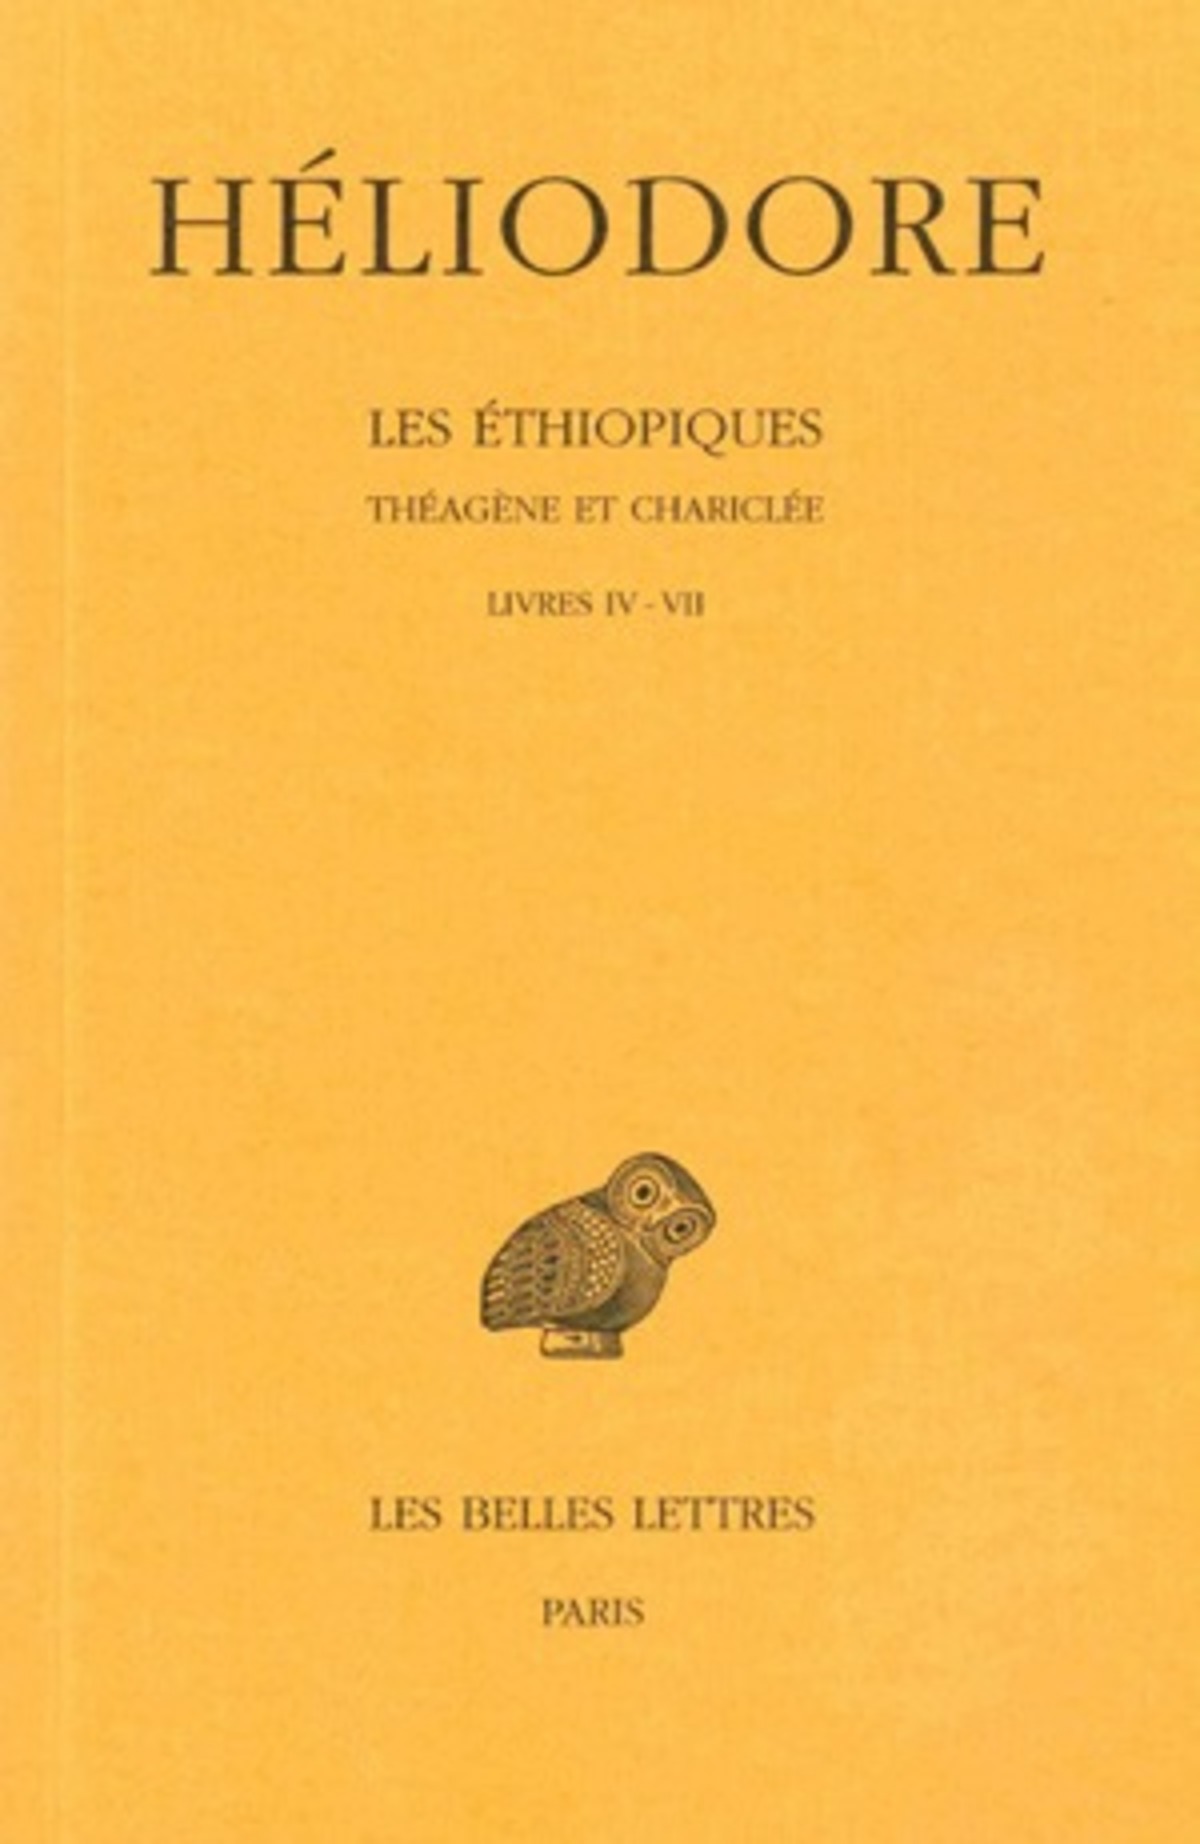 Les Éthiopiques. Théagène et Chariclée. Tome II : Livres IV-VII